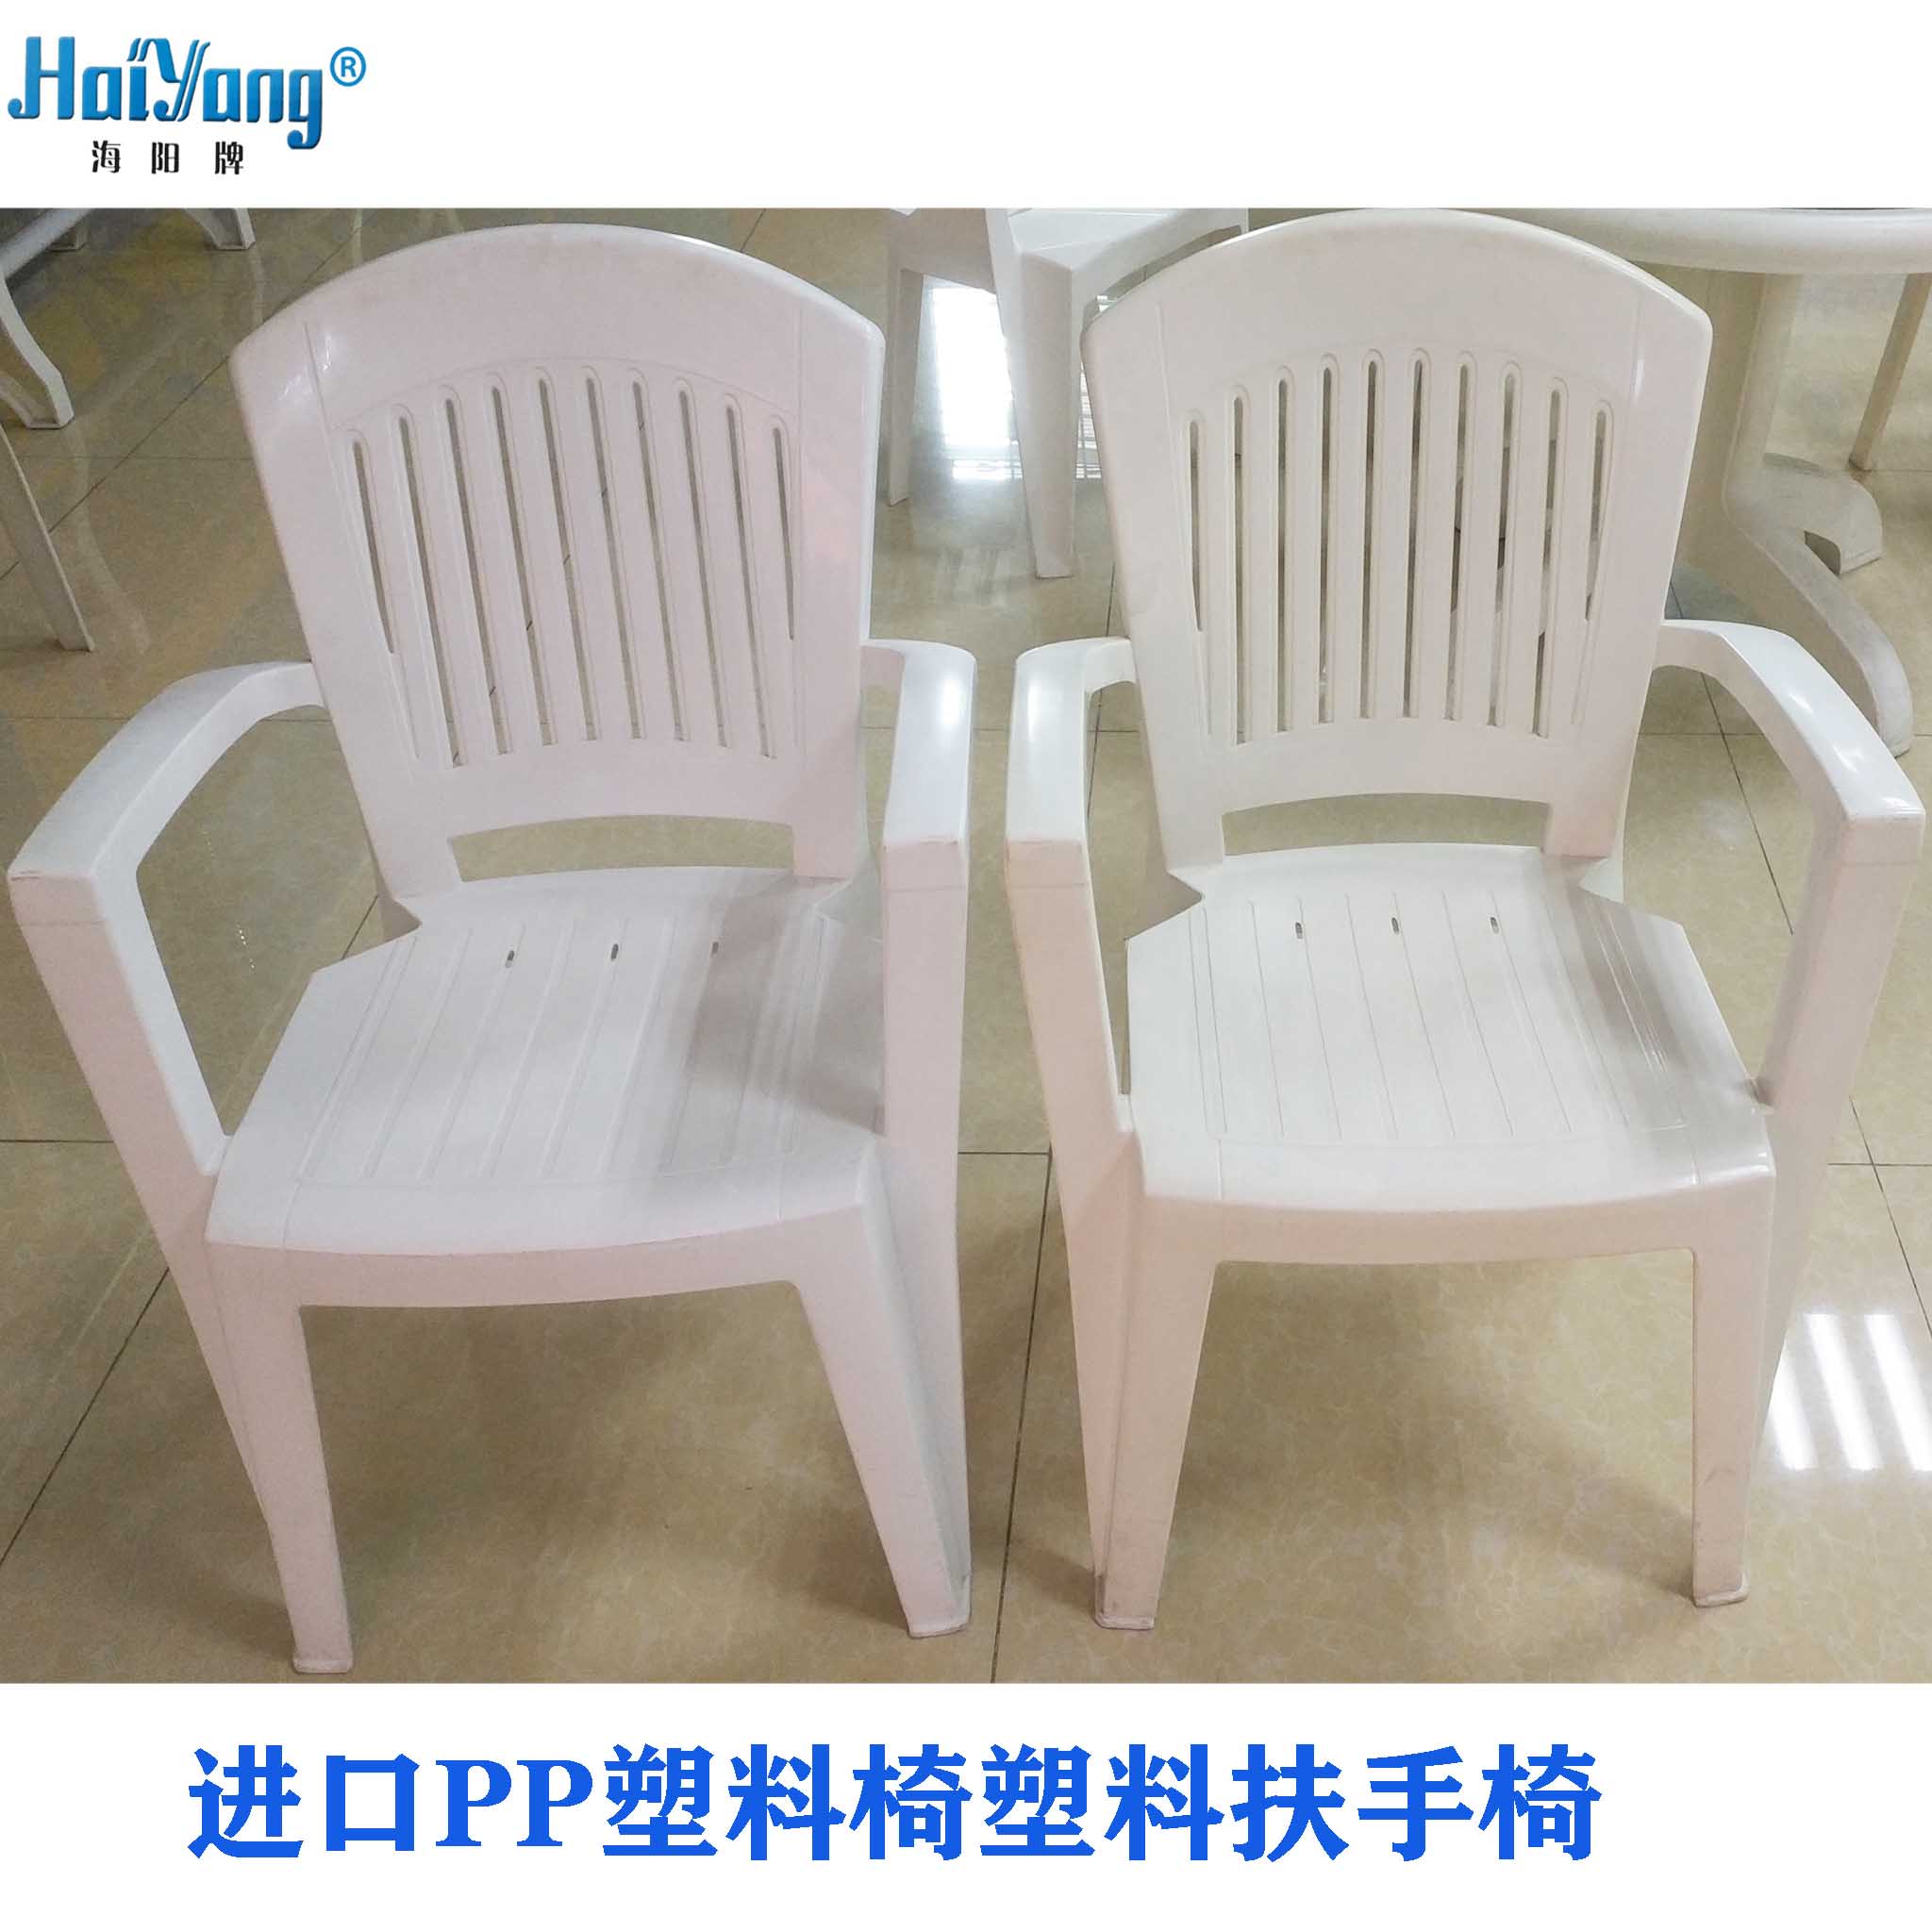 ART.2315塑料休闲椅/塑料椅子/塑料扶手椅现货批发